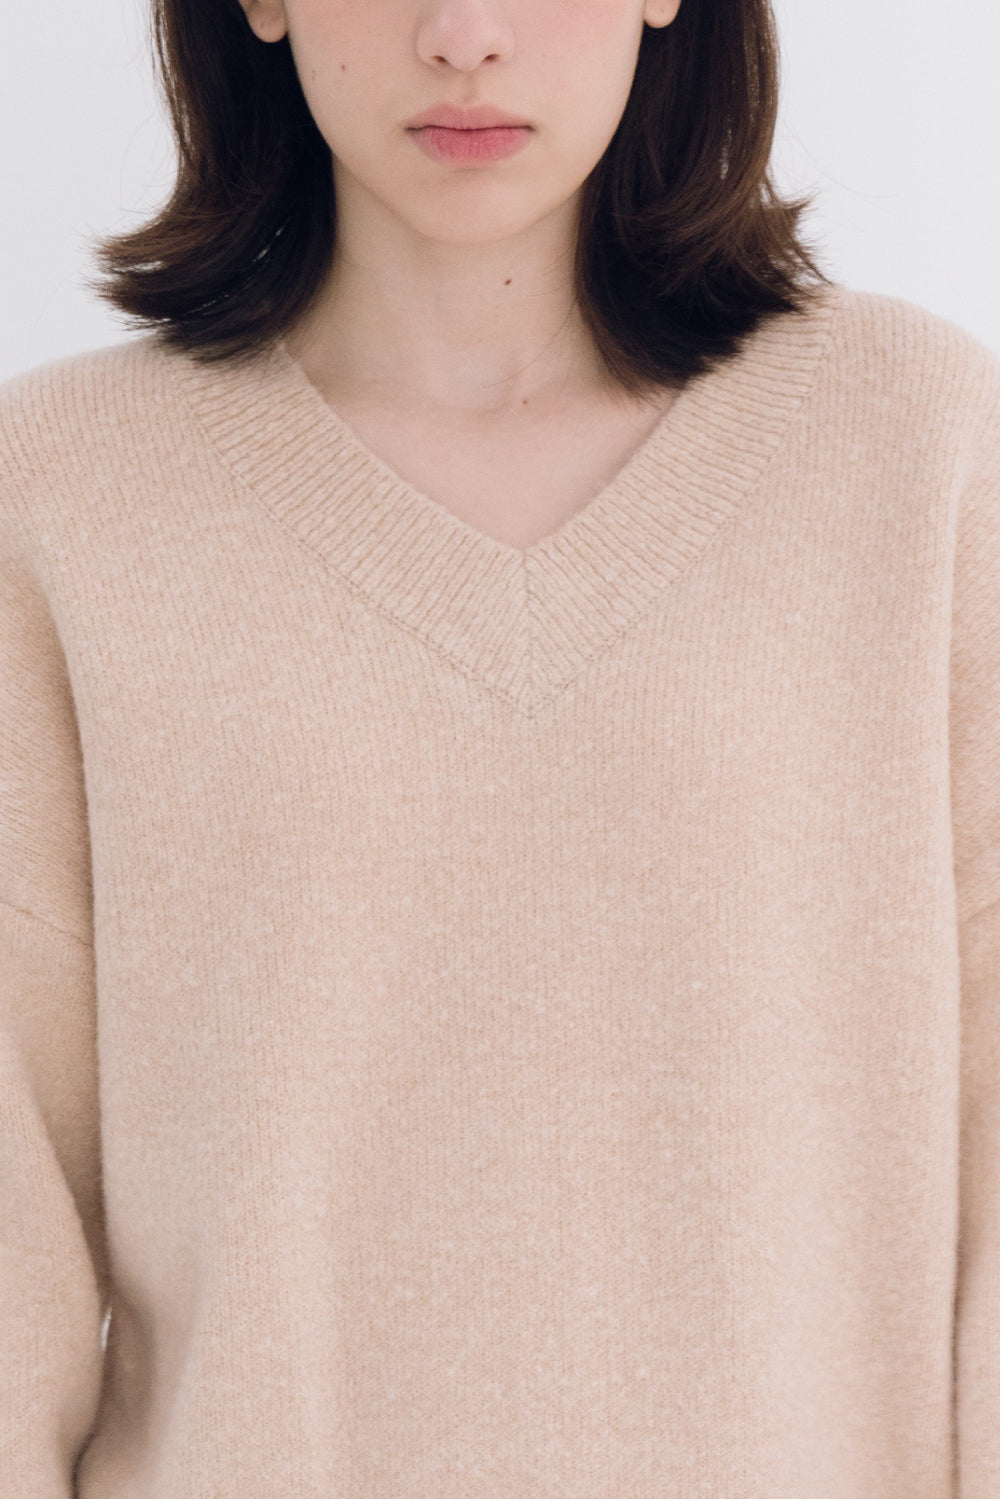 NOTA V Neck Yak Semi Crop Knit Top Beige Modest Loose Long Sleeves Women's Sweater in Wool 